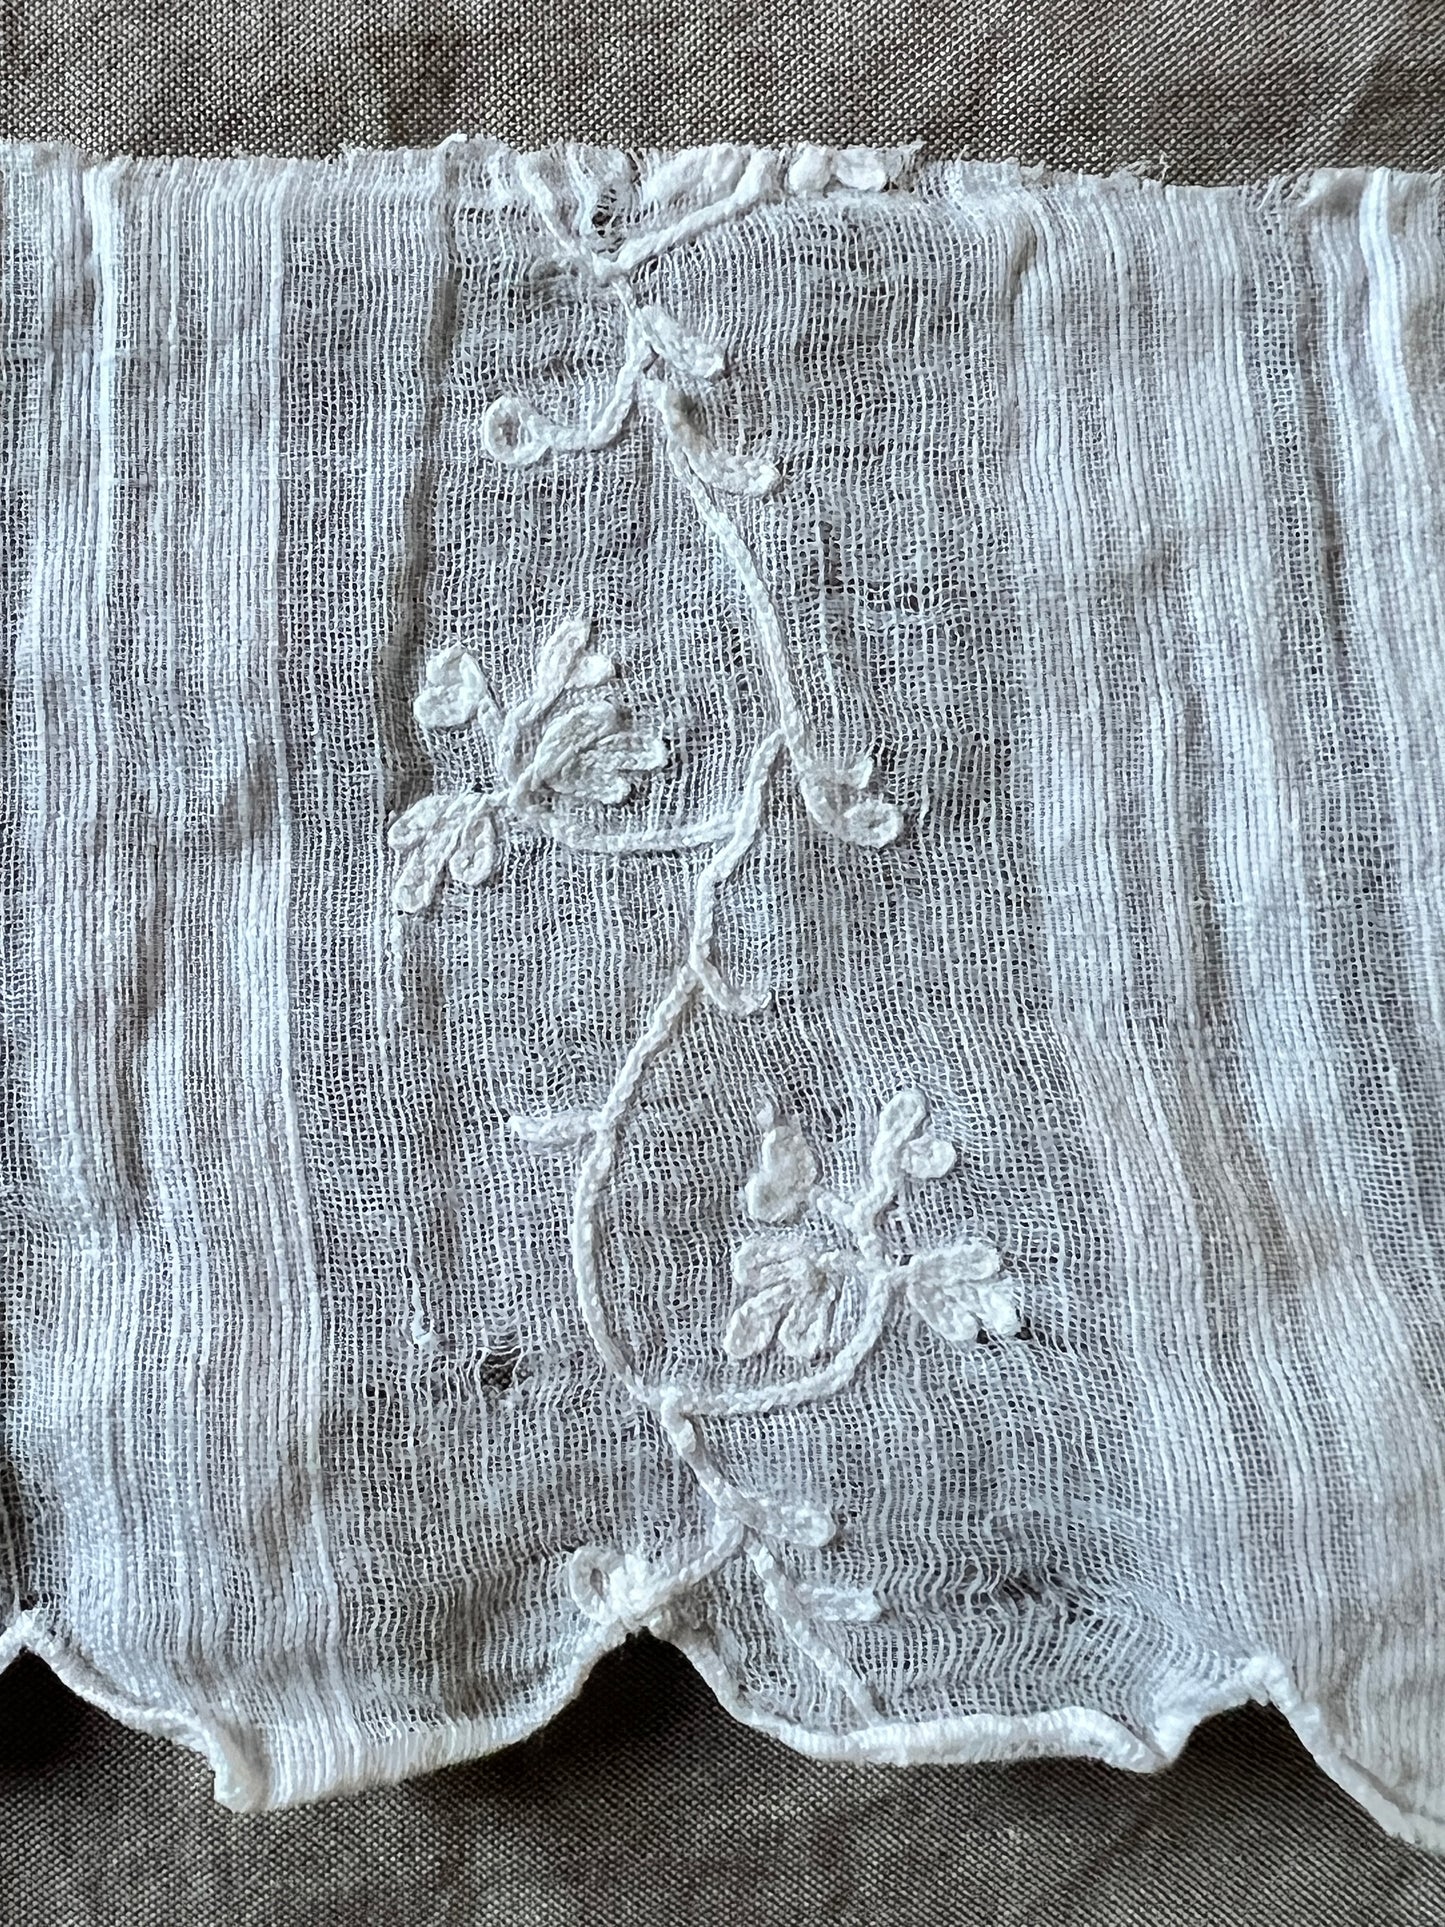 刺繍入り裾飾り布(ダメージ)